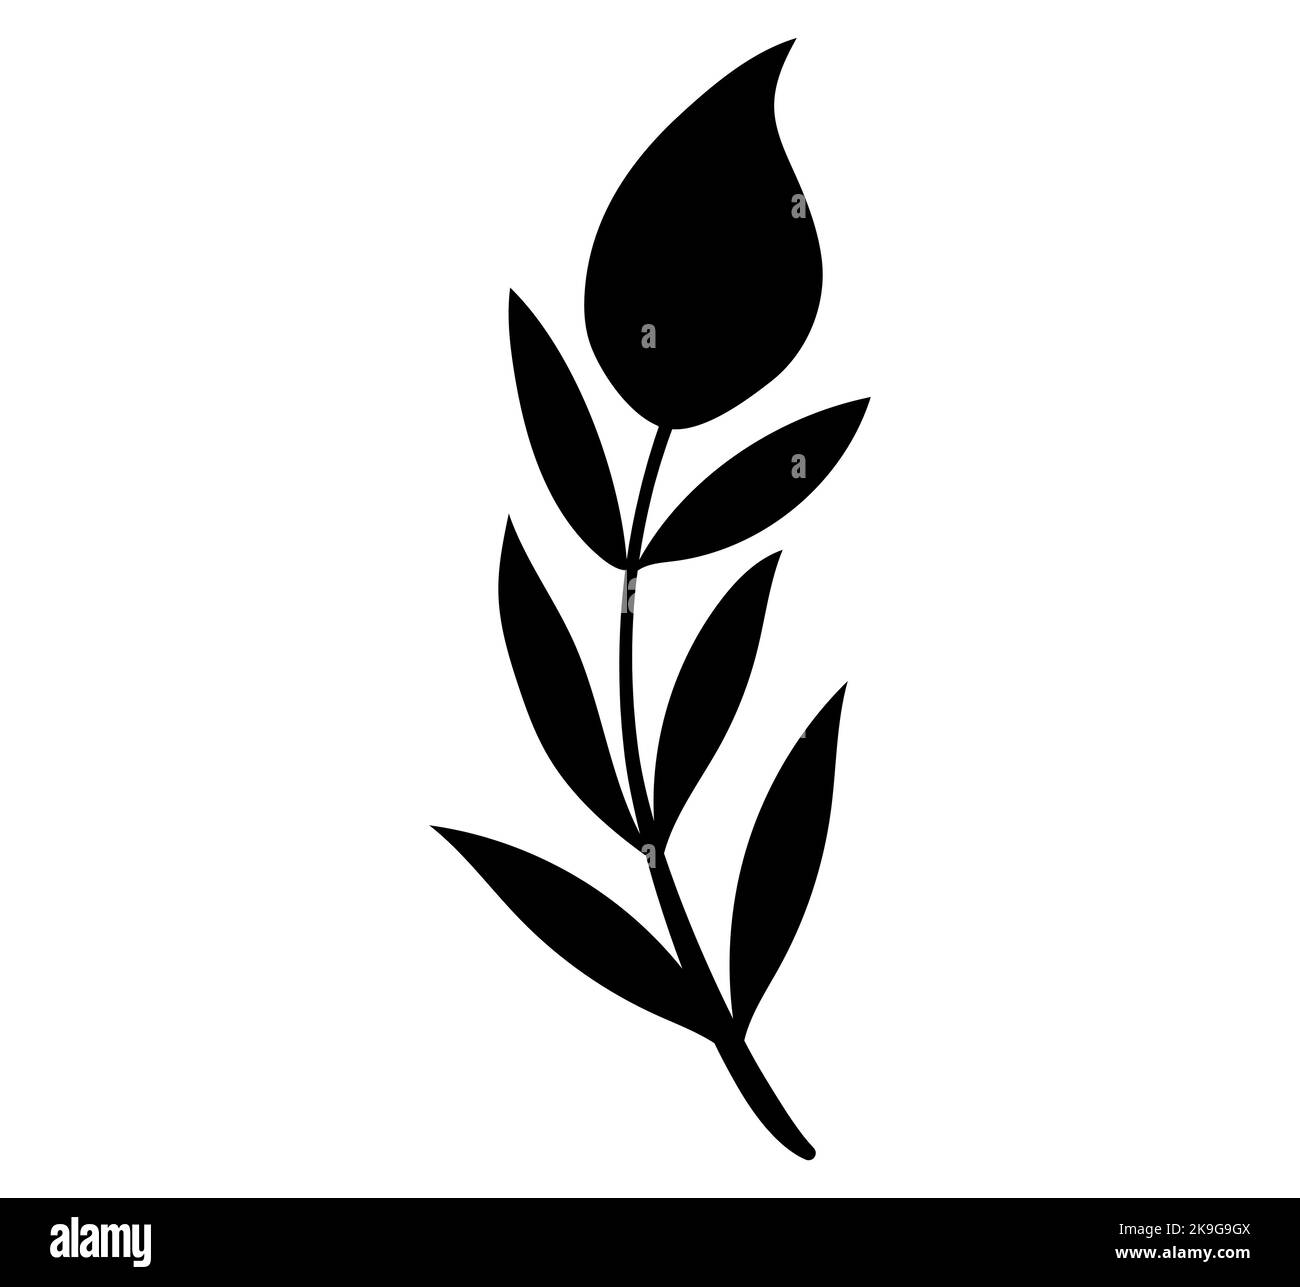 Une silhouette noire d'une fleur sans fleur avec beaucoup de feuilles sur ses tiges Illustration de Vecteur